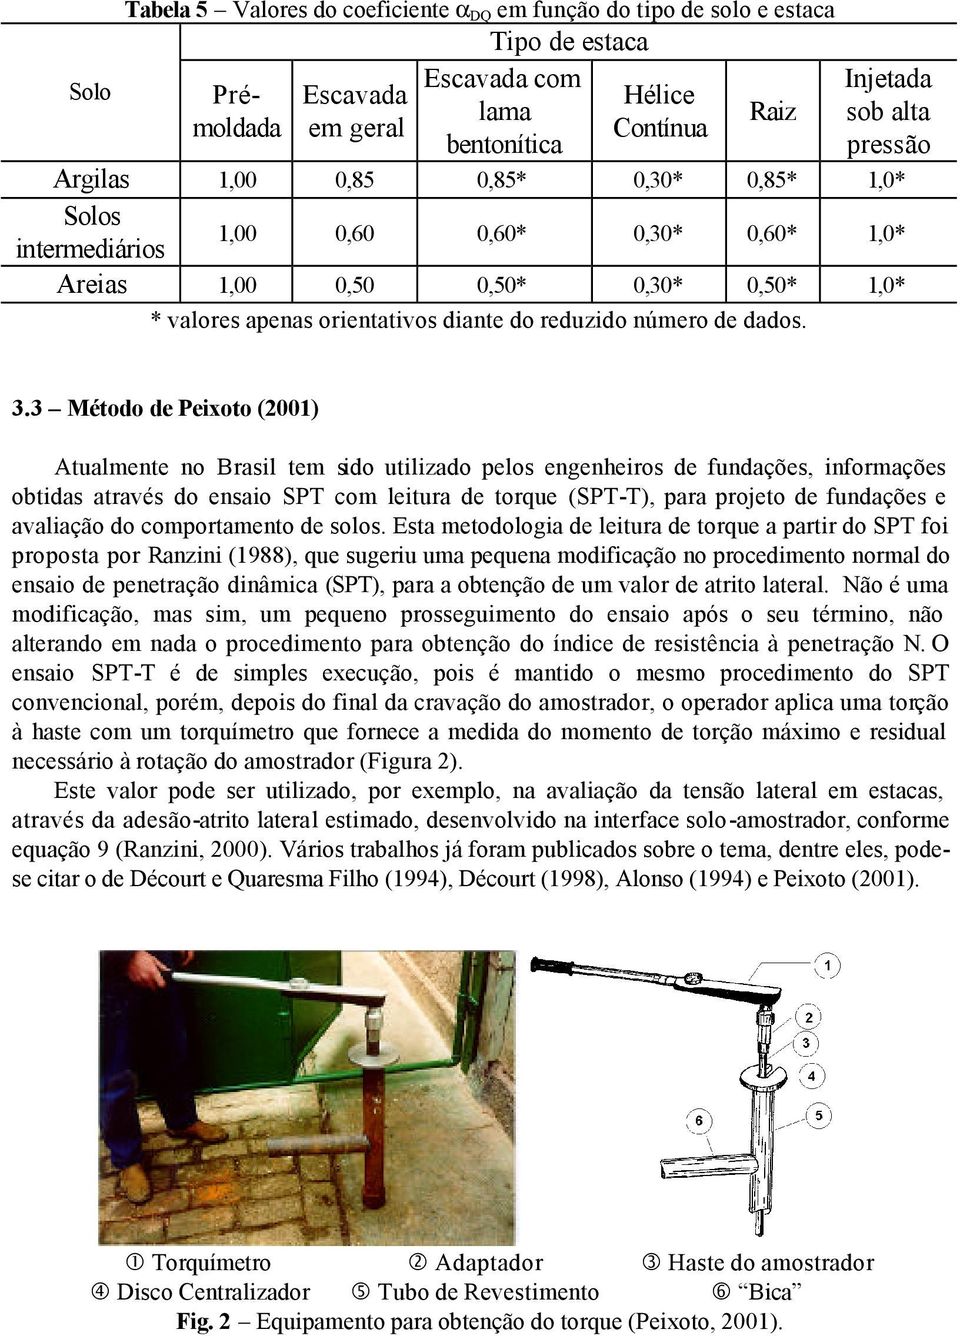 3.3 Método de Peixoto (2001) Atualmente no Brasil tem sido utilizado pelos engenheiros de fundações, informações obtidas através do ensaio SPT com leitura de torque (SPT-T), para projeto de fundações